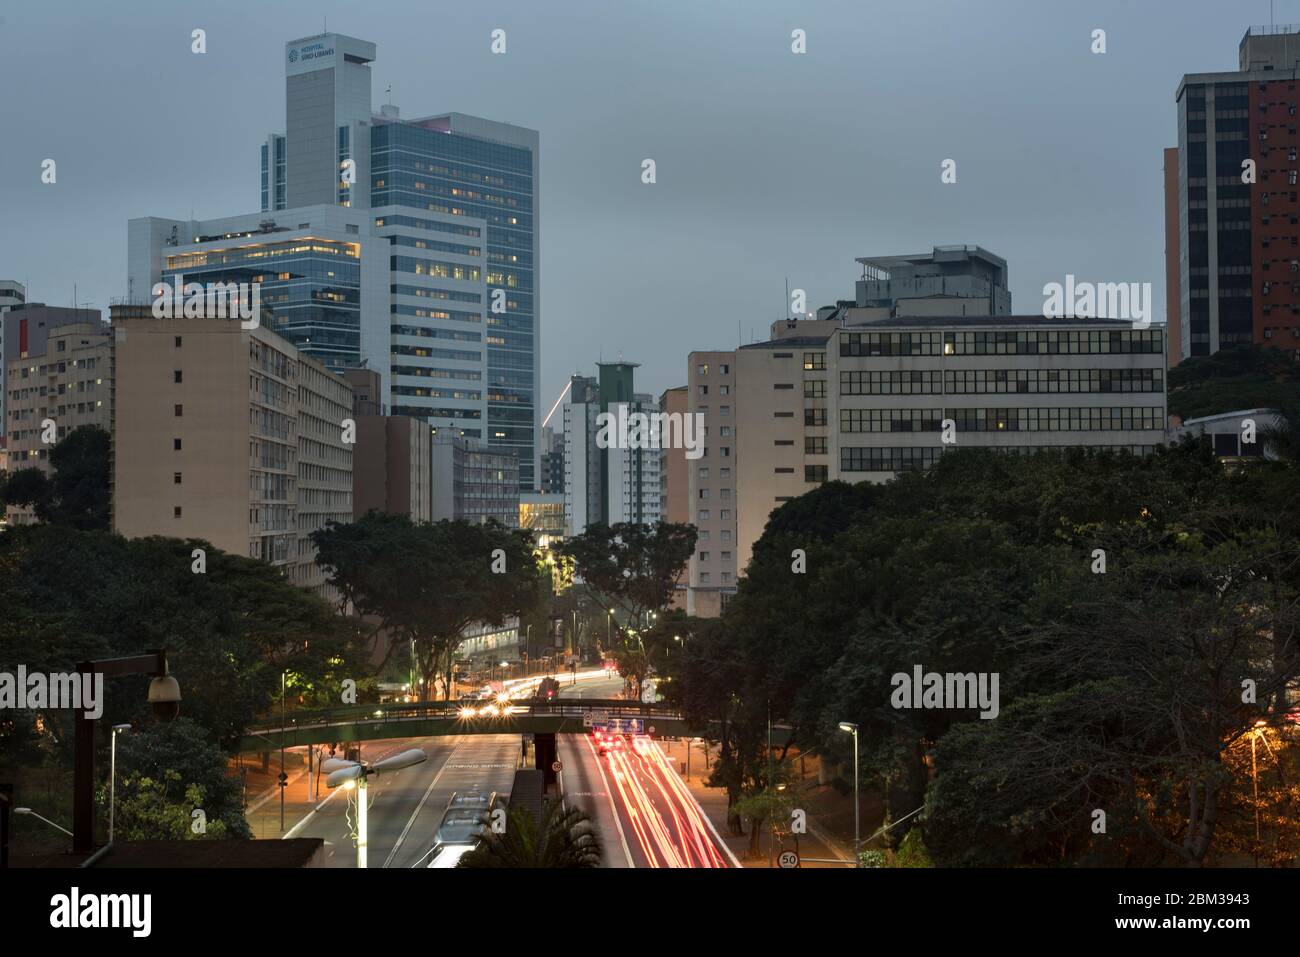 L'avenue du 9 juillet (Avenida 9 de Julho), à Sao Paulo, au Brésil, est vue ici sur cette photo. C'est l'une des principales avenues de la ville. Banque D'Images